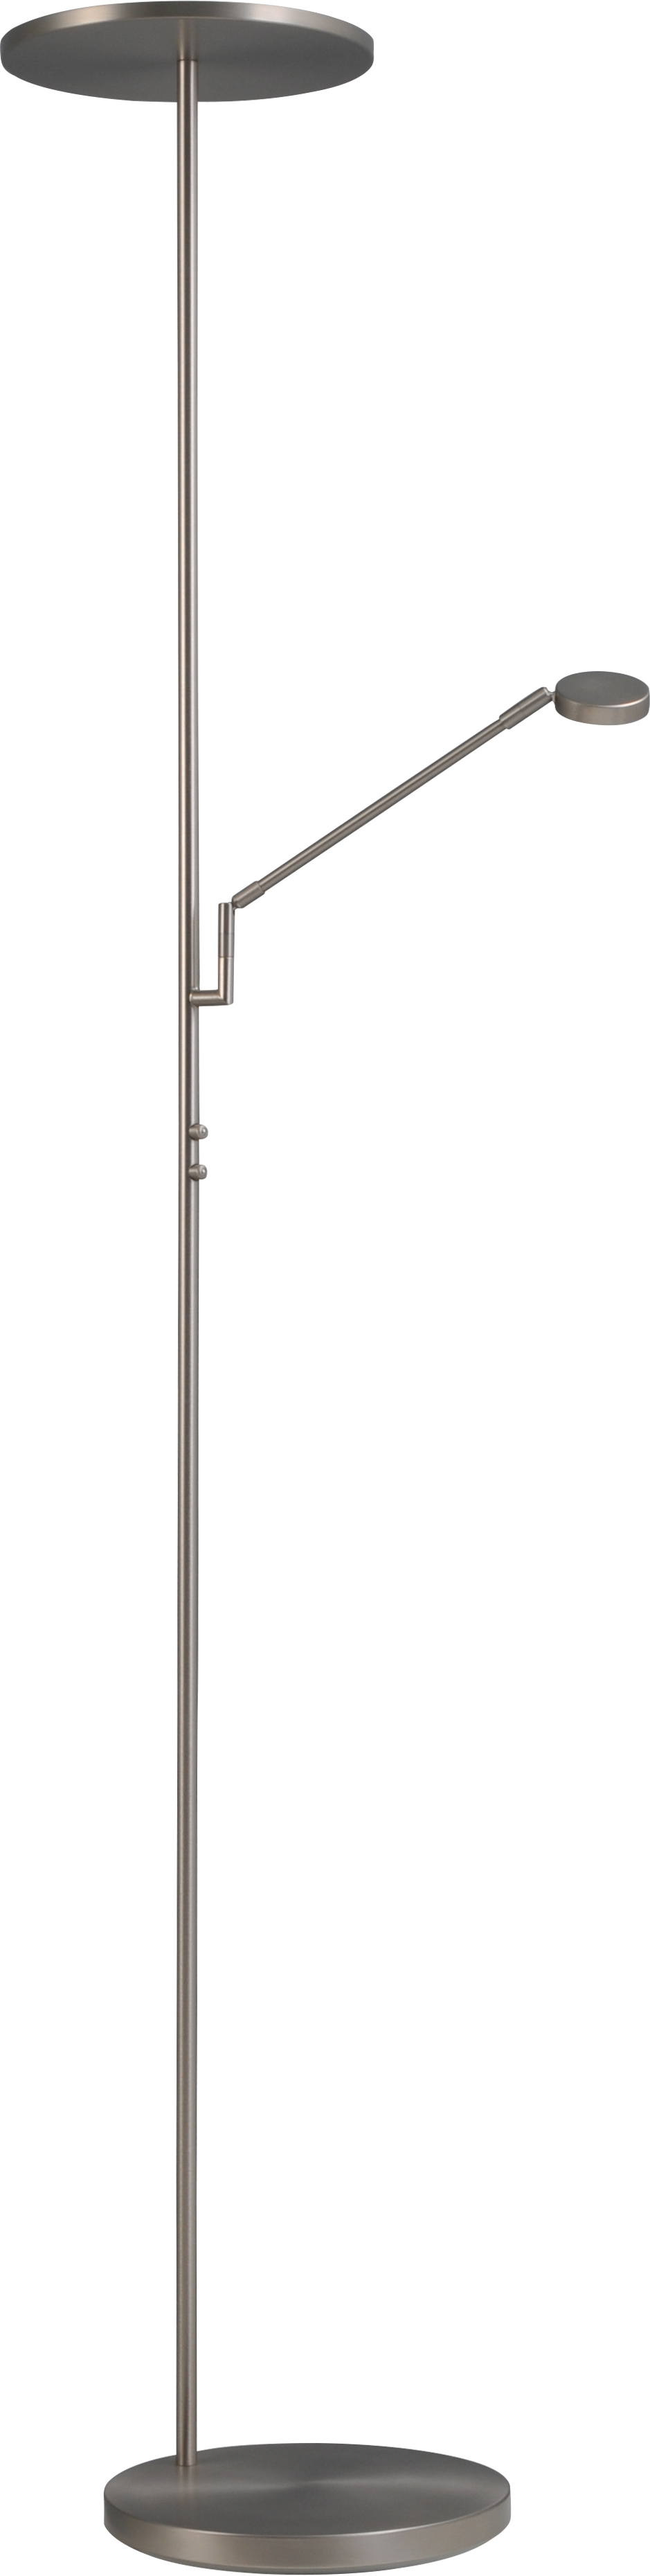 Vloerlamp Denia 2 LED Masterlight 1086-37